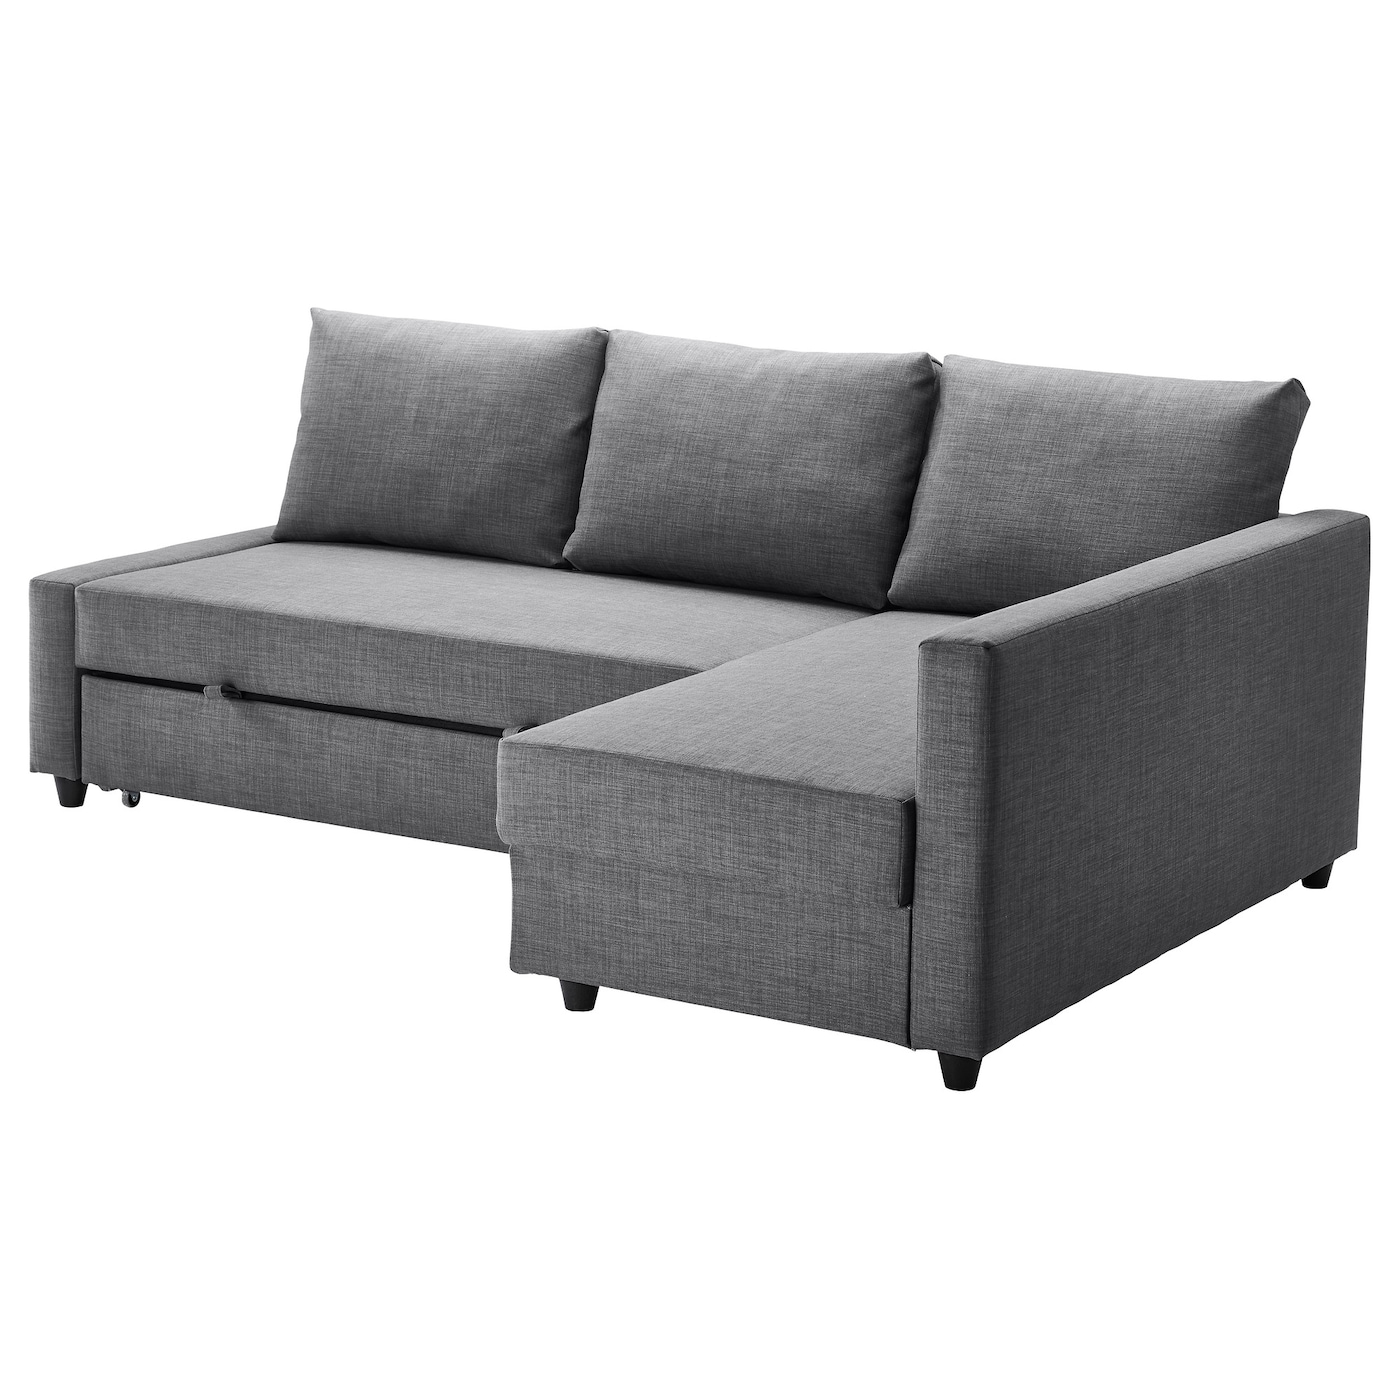 ФРИХЕТЭН Диван-кровать угловой + место для хранения, Скифтебо темно-серый FRIHETEN IKEA диван кровать ramart design йорк премиум дк3 juno ash